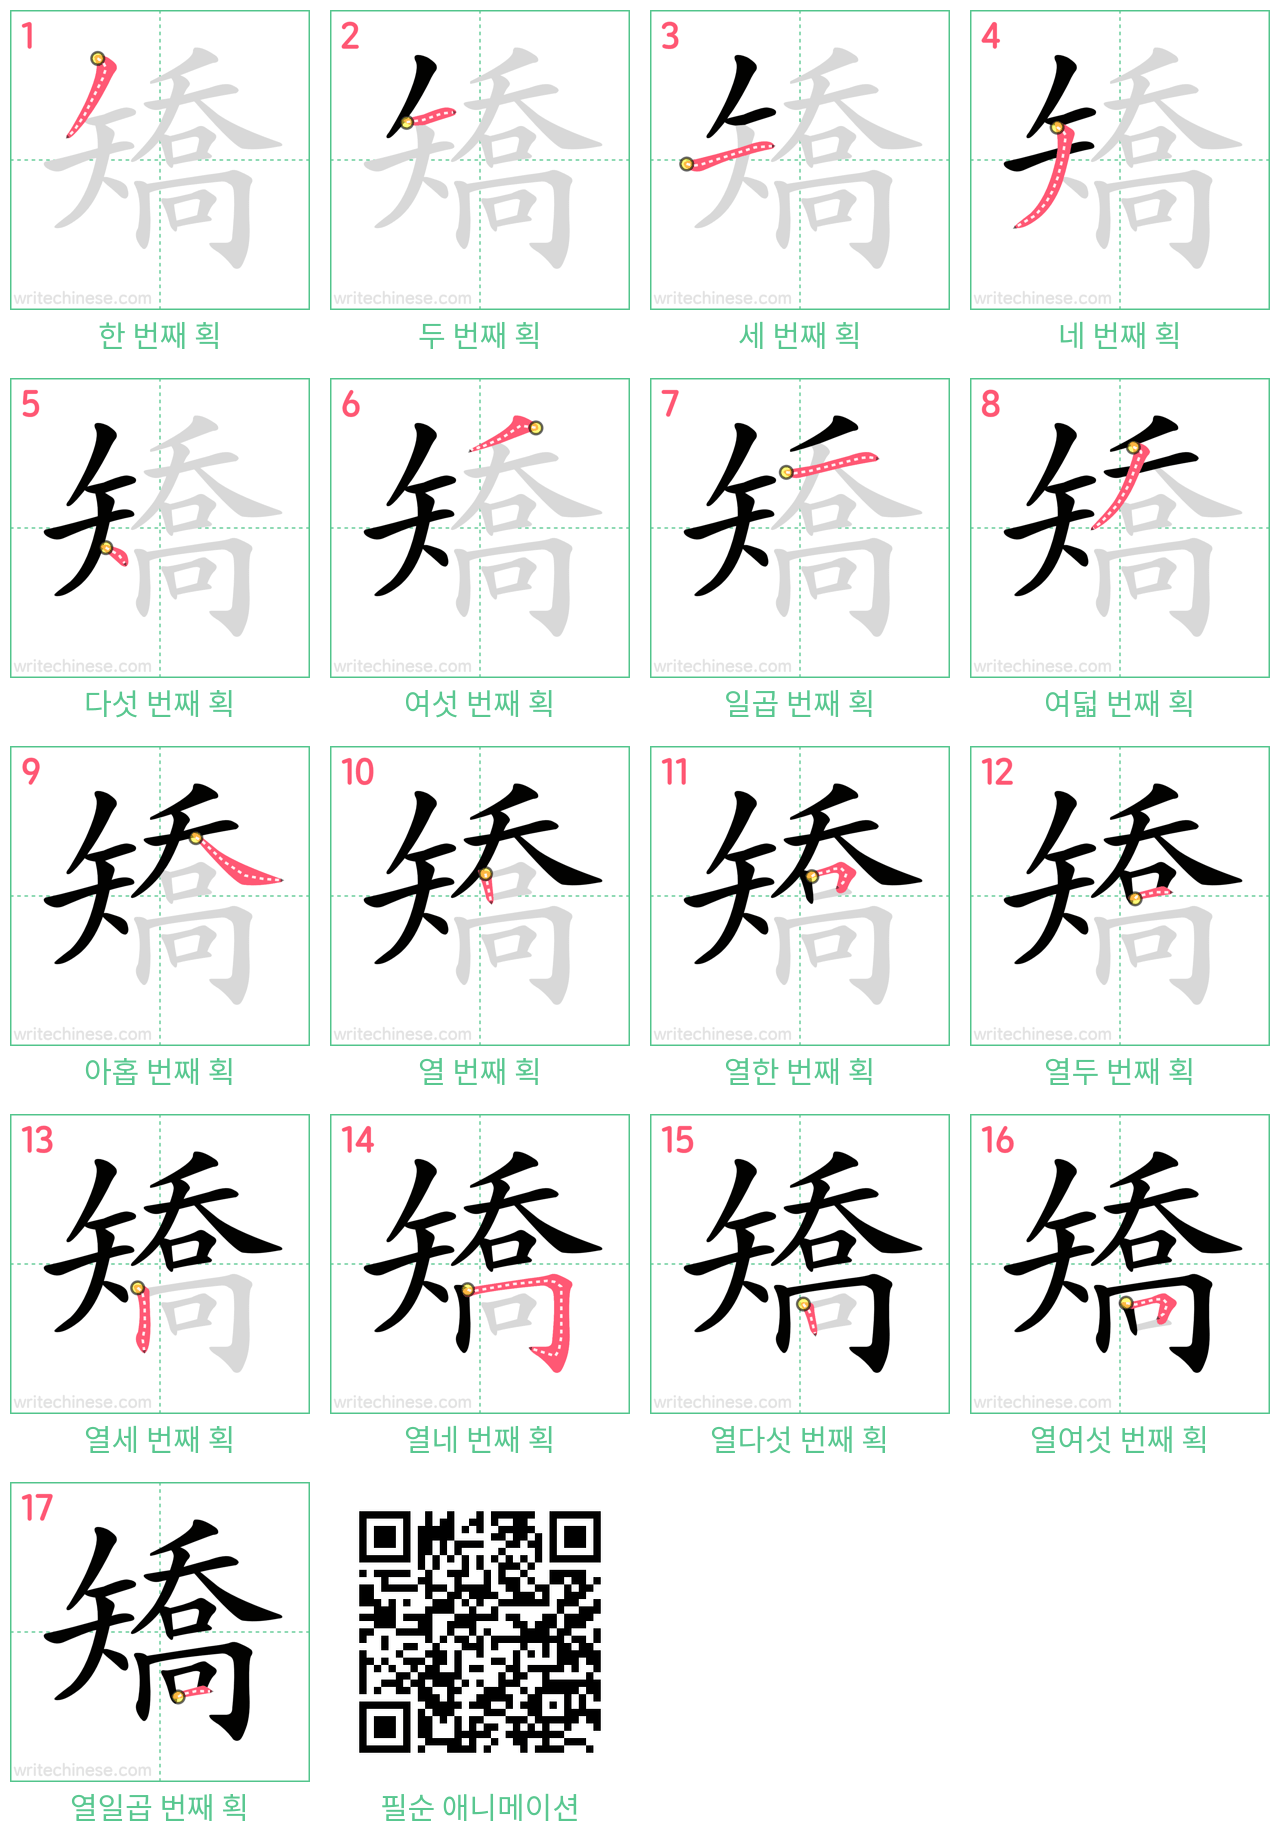 矯 step-by-step stroke order diagrams